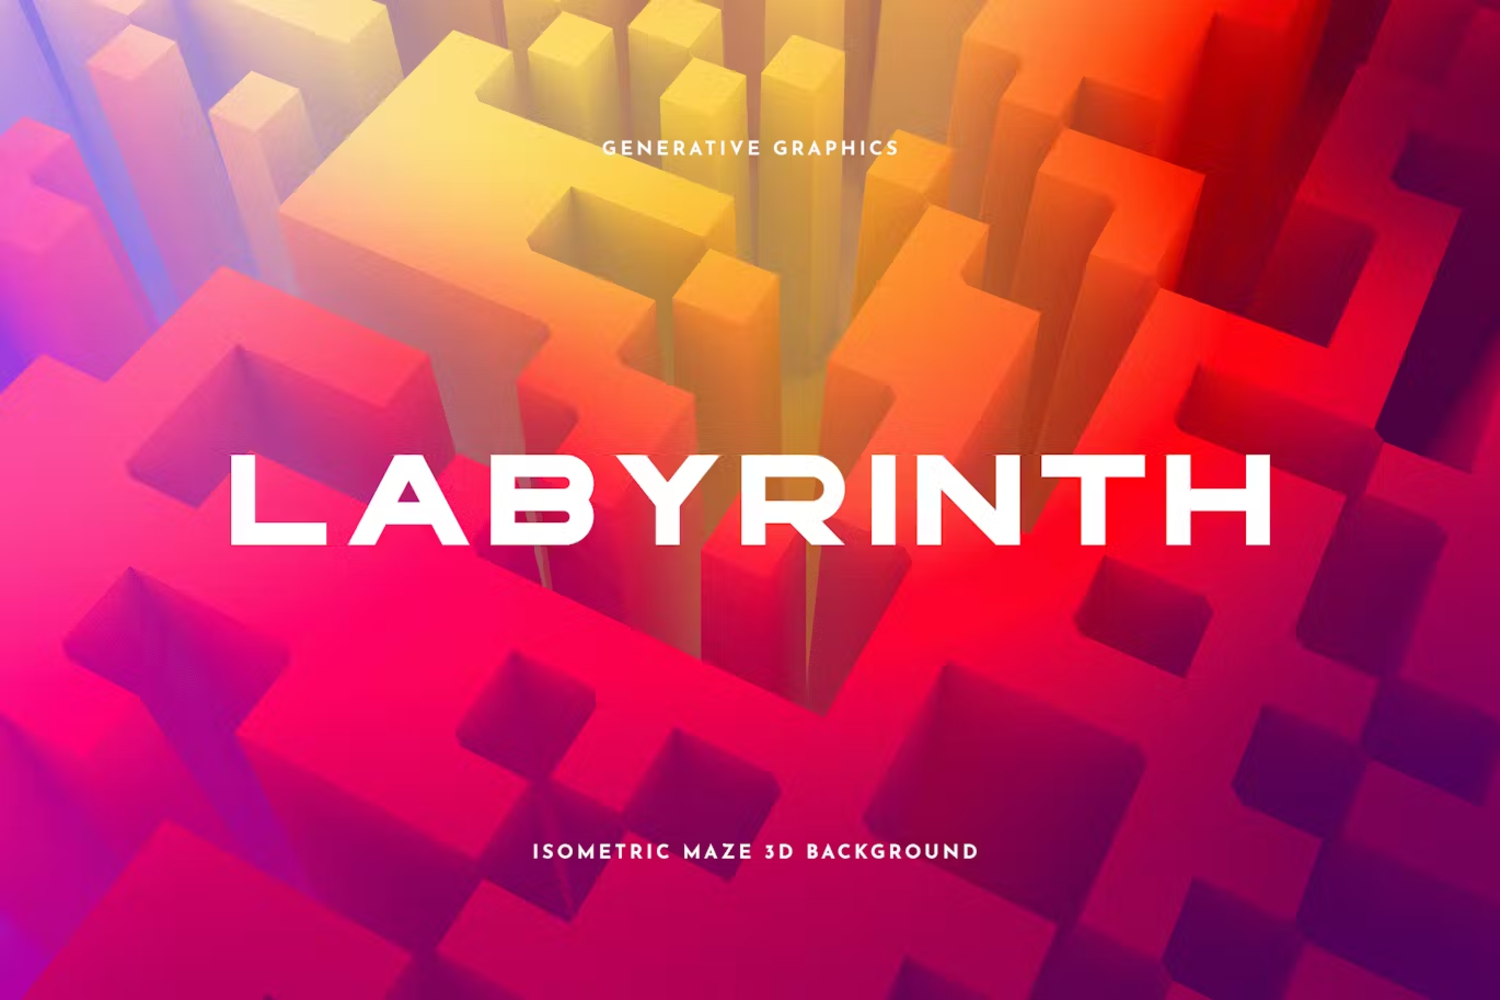 6017 多彩生成迷宫风格构图背景素材-Labyrinth Background